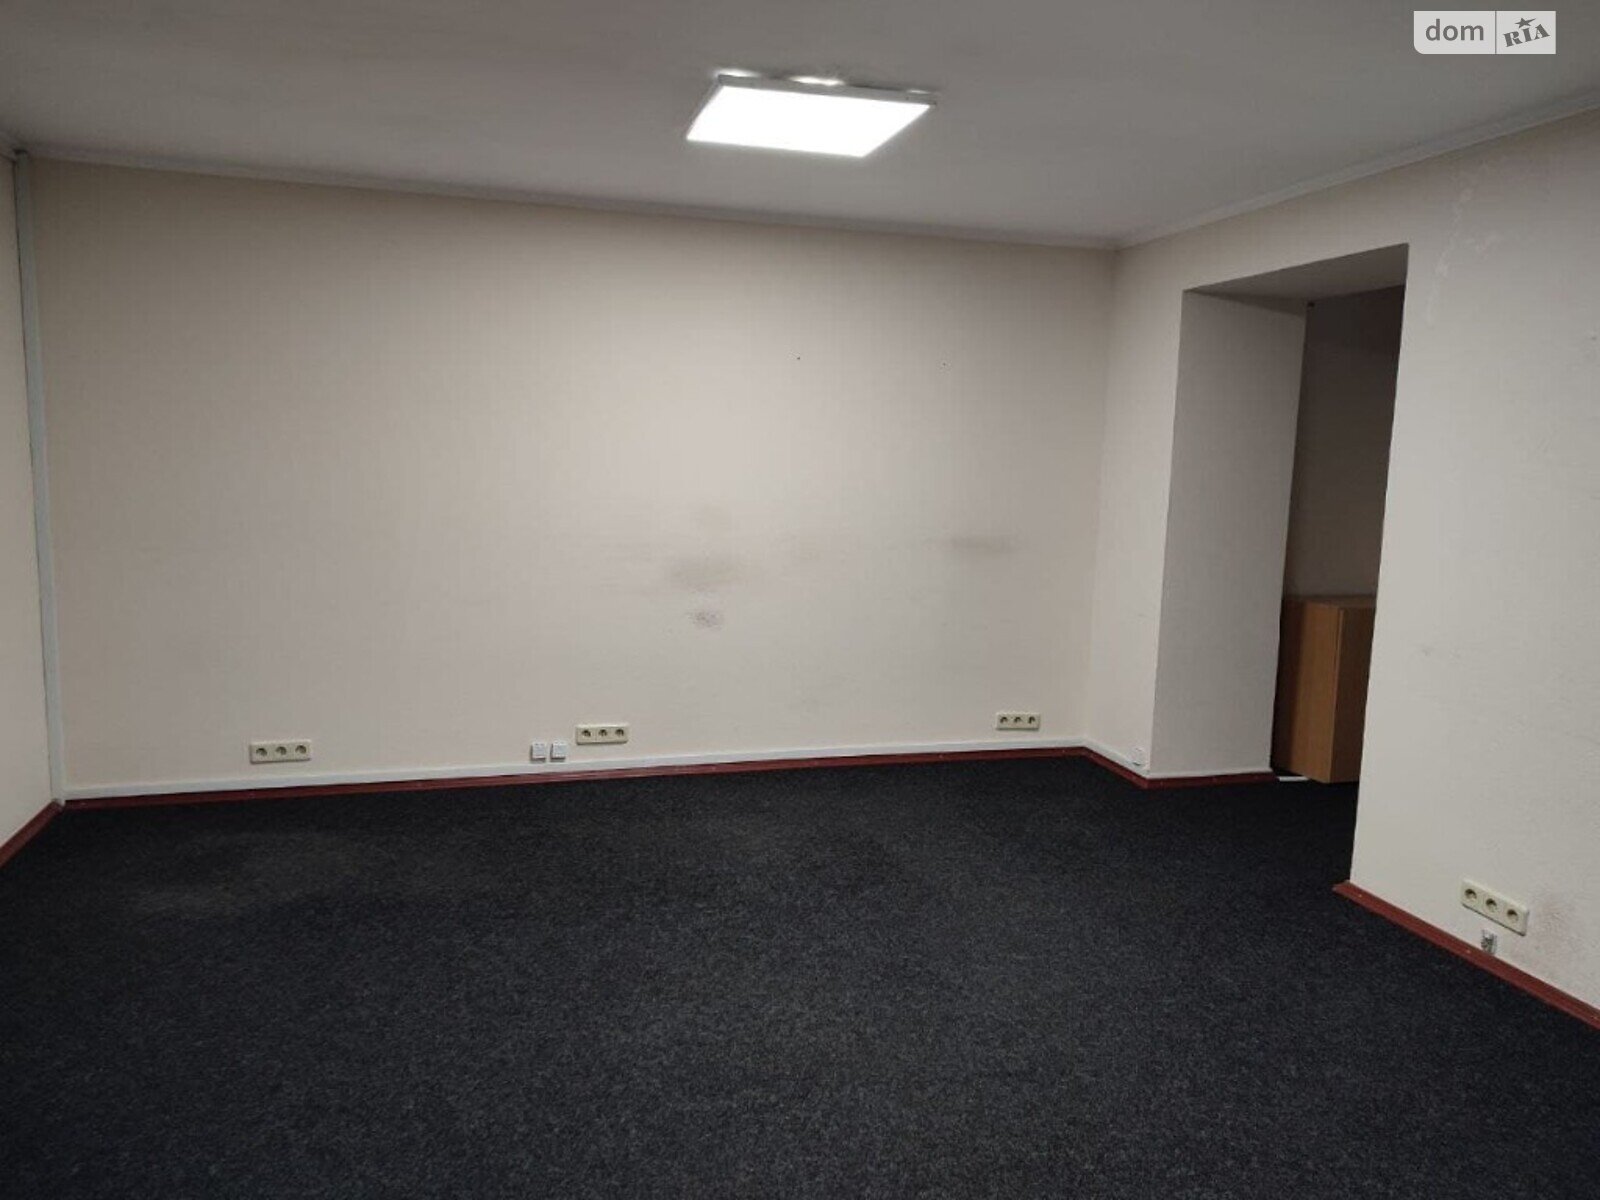 Аренда офисного помещения в Чернигове, Пятницкая улица 74, помещений - 1, этаж - 1 фото 1